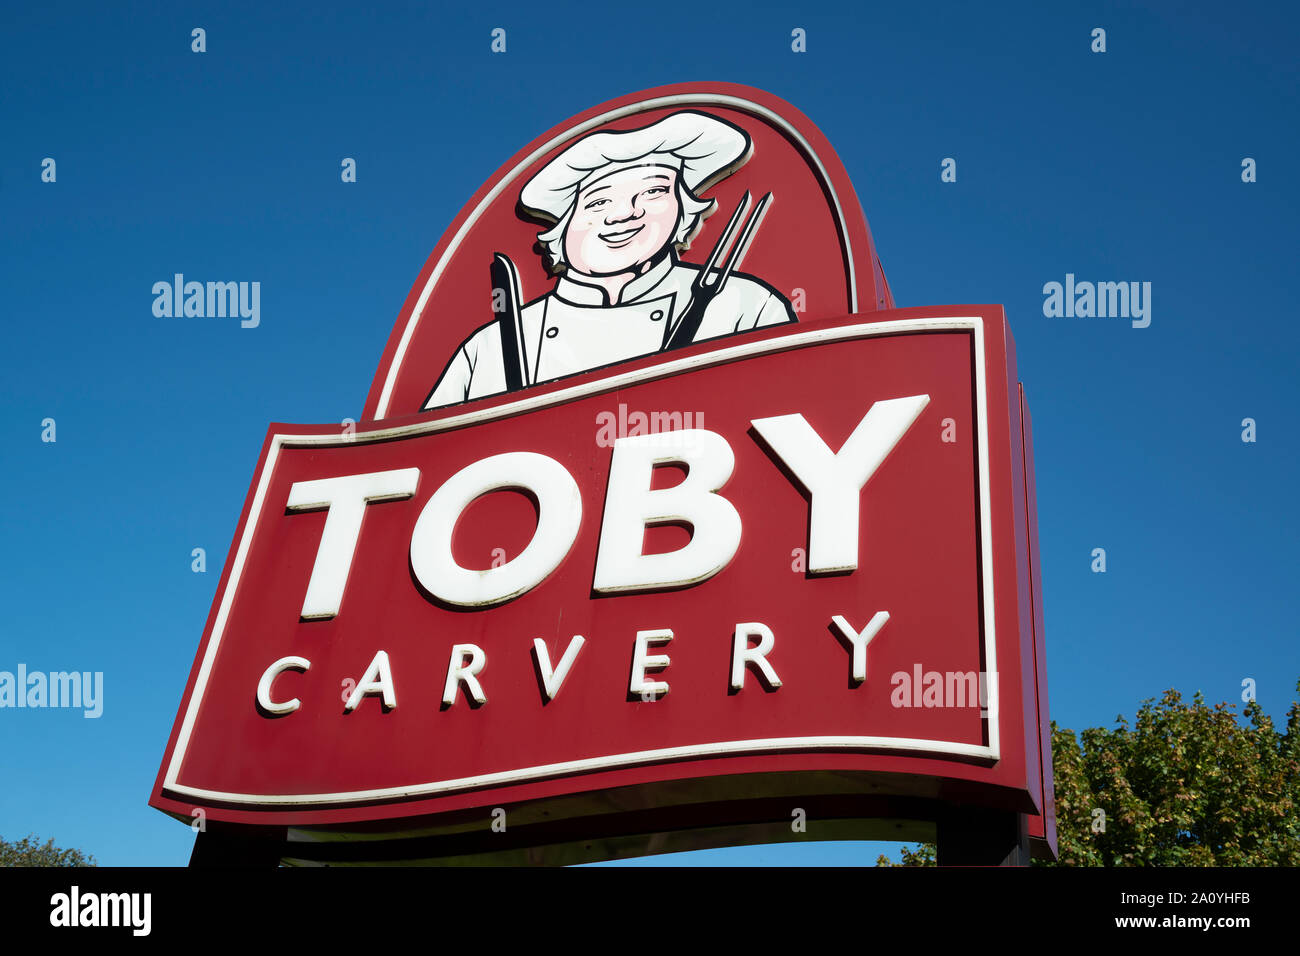 La signalisation d'une succursale de la chaîne de restaurant Toby Carvery. Banque D'Images